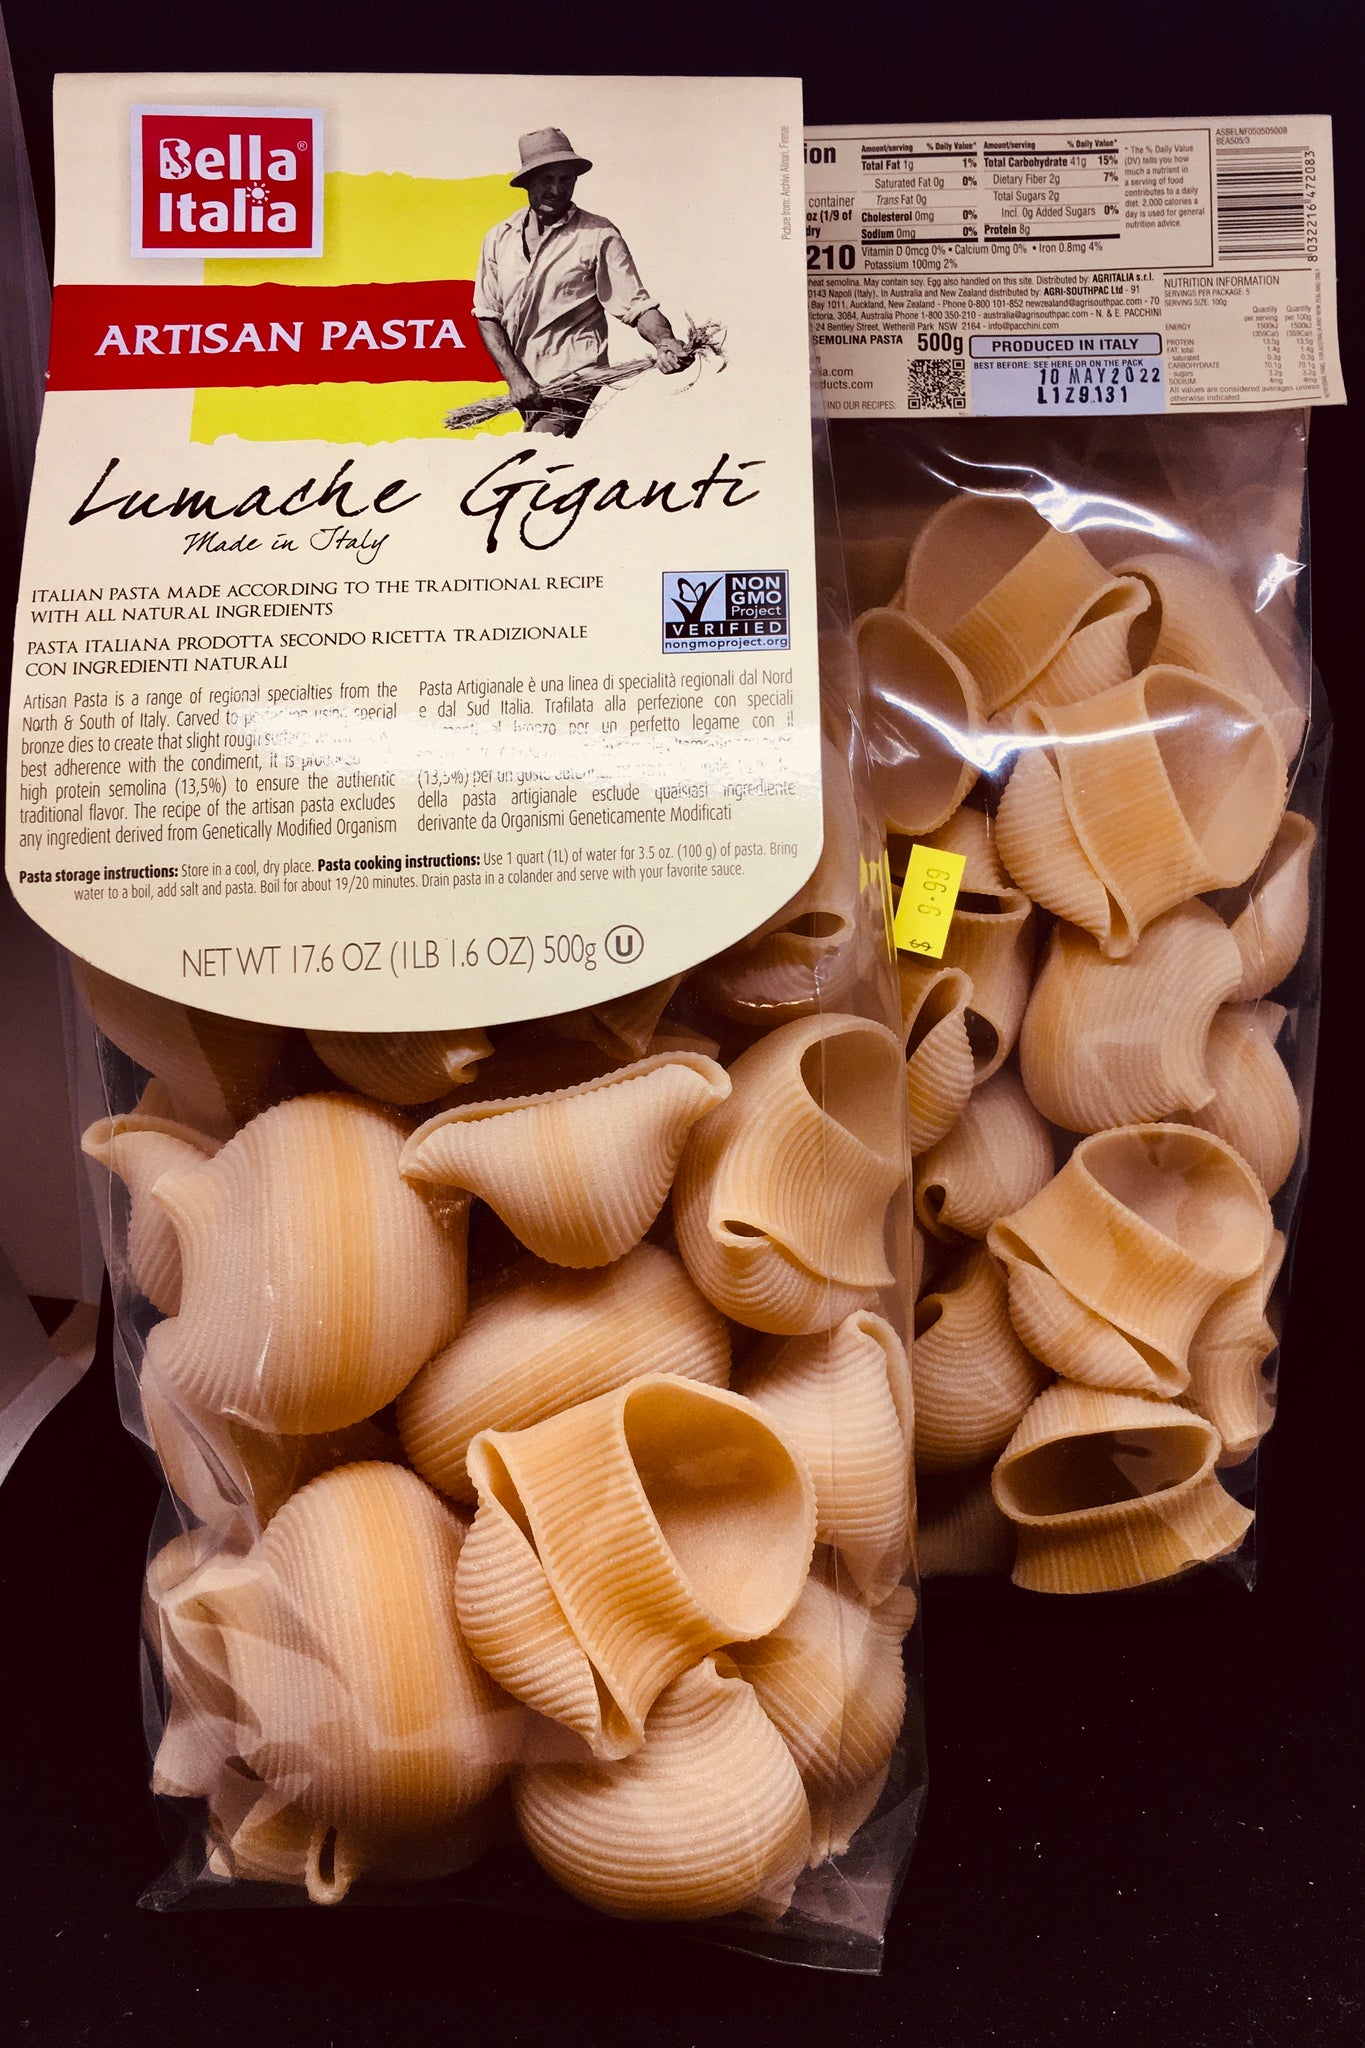 Bella Lumache Giant Pasta - Shells